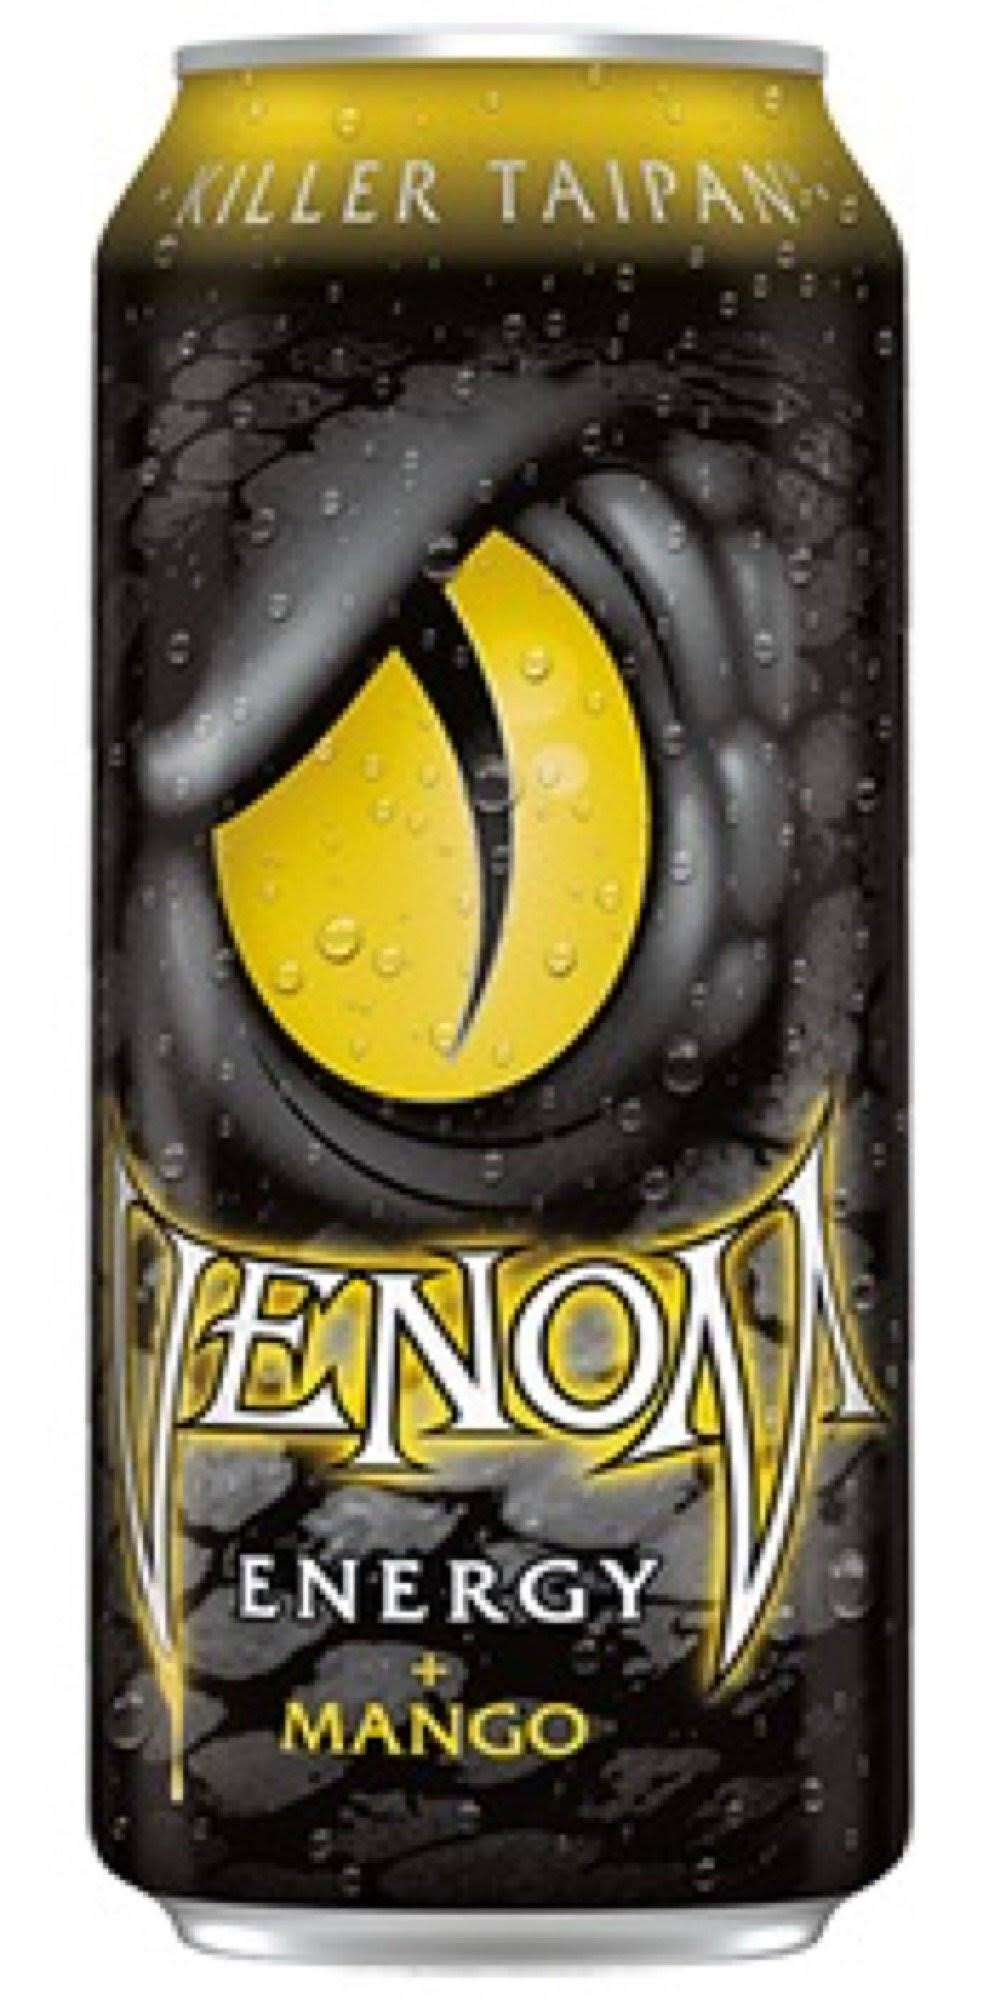 Venom Energy Drink Killer Taipan, 16 Ounce (16 Cans)